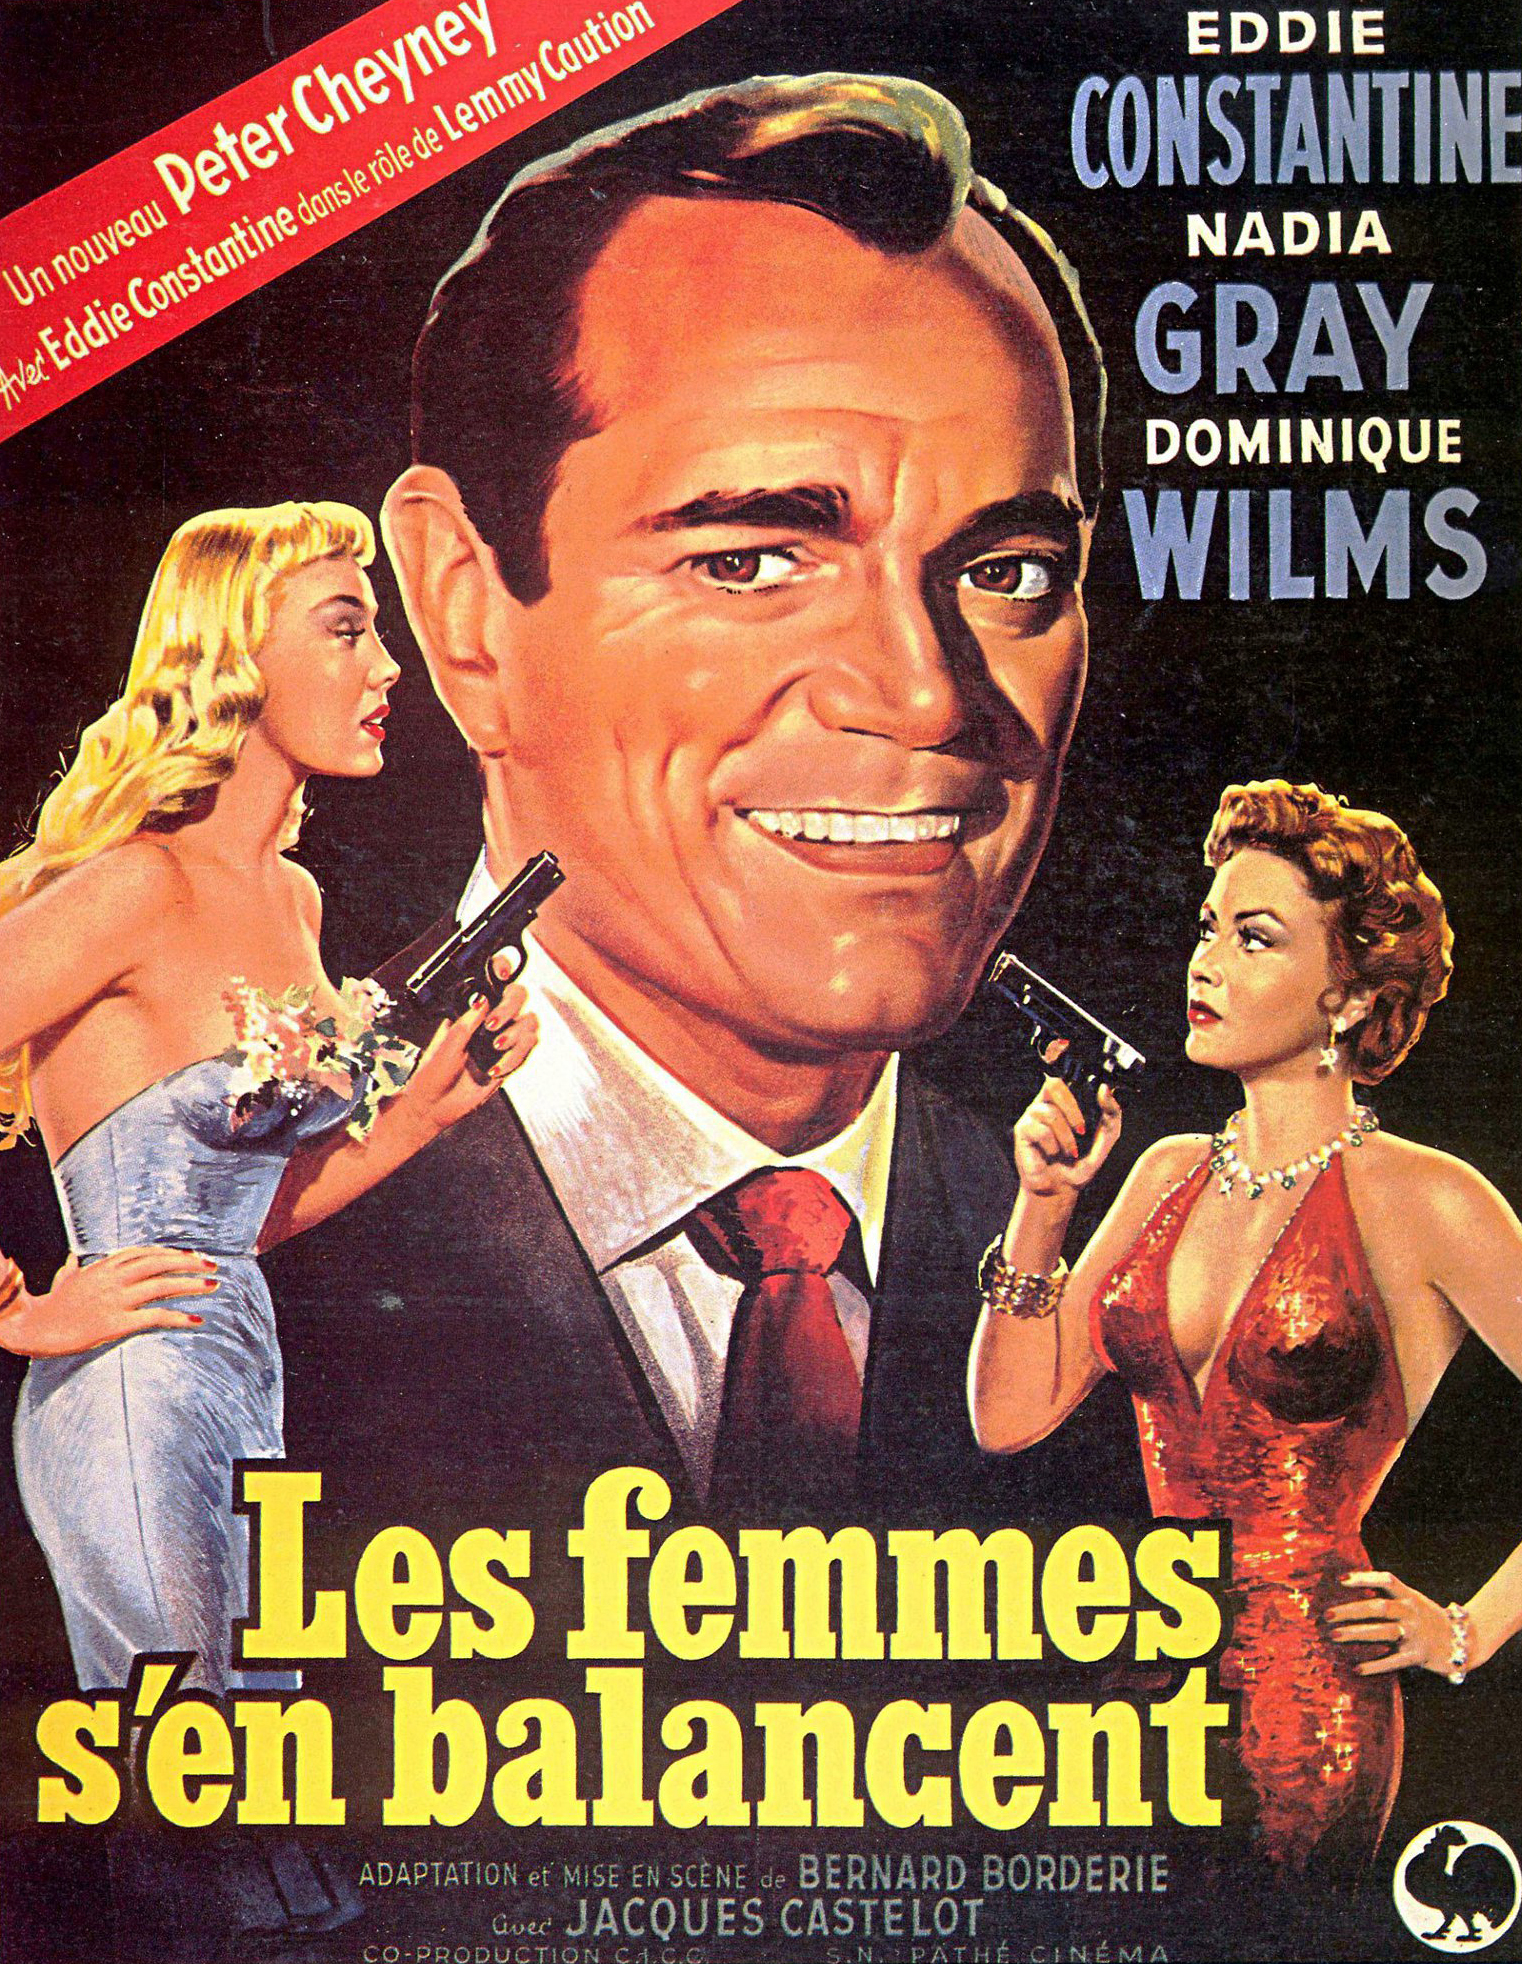 Les femmes s'en balancent (1954) Screenshot 5